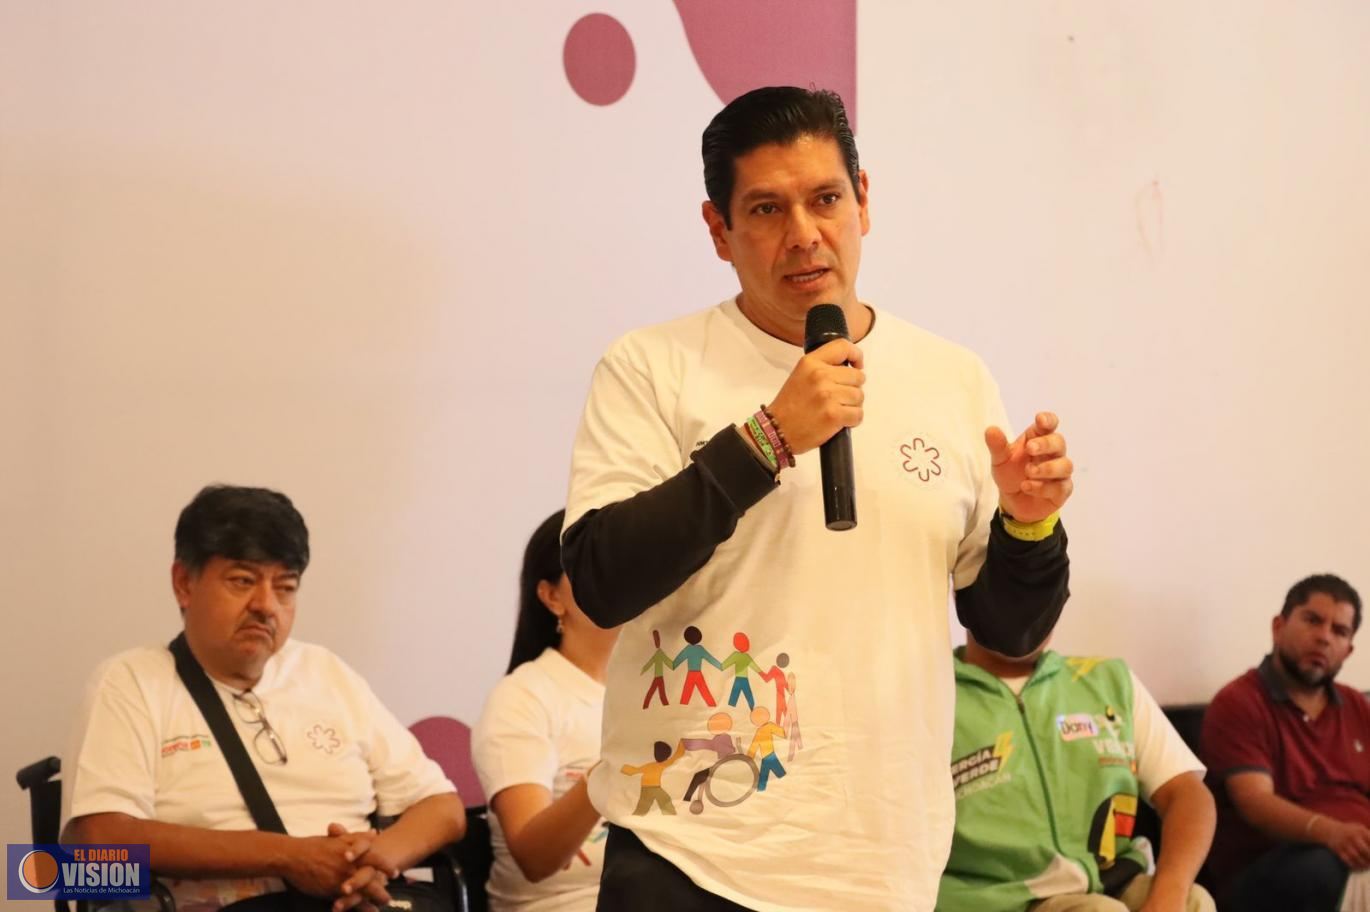 Firma “Neto” Núñez compromiso de respaldo a personas con discapacidad